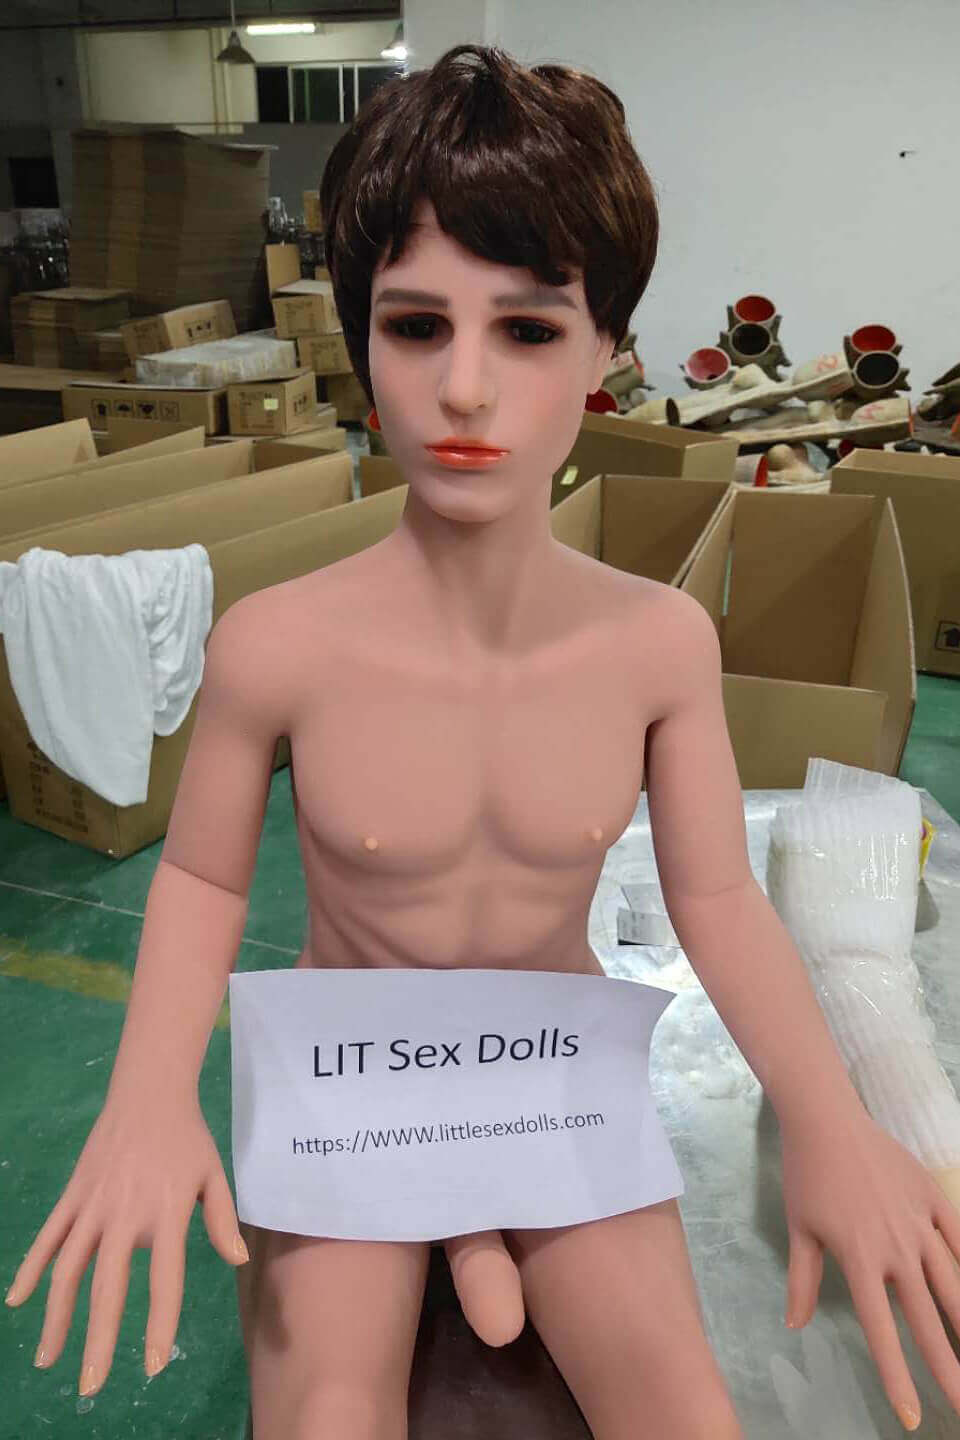 About LIT Sex Dolls